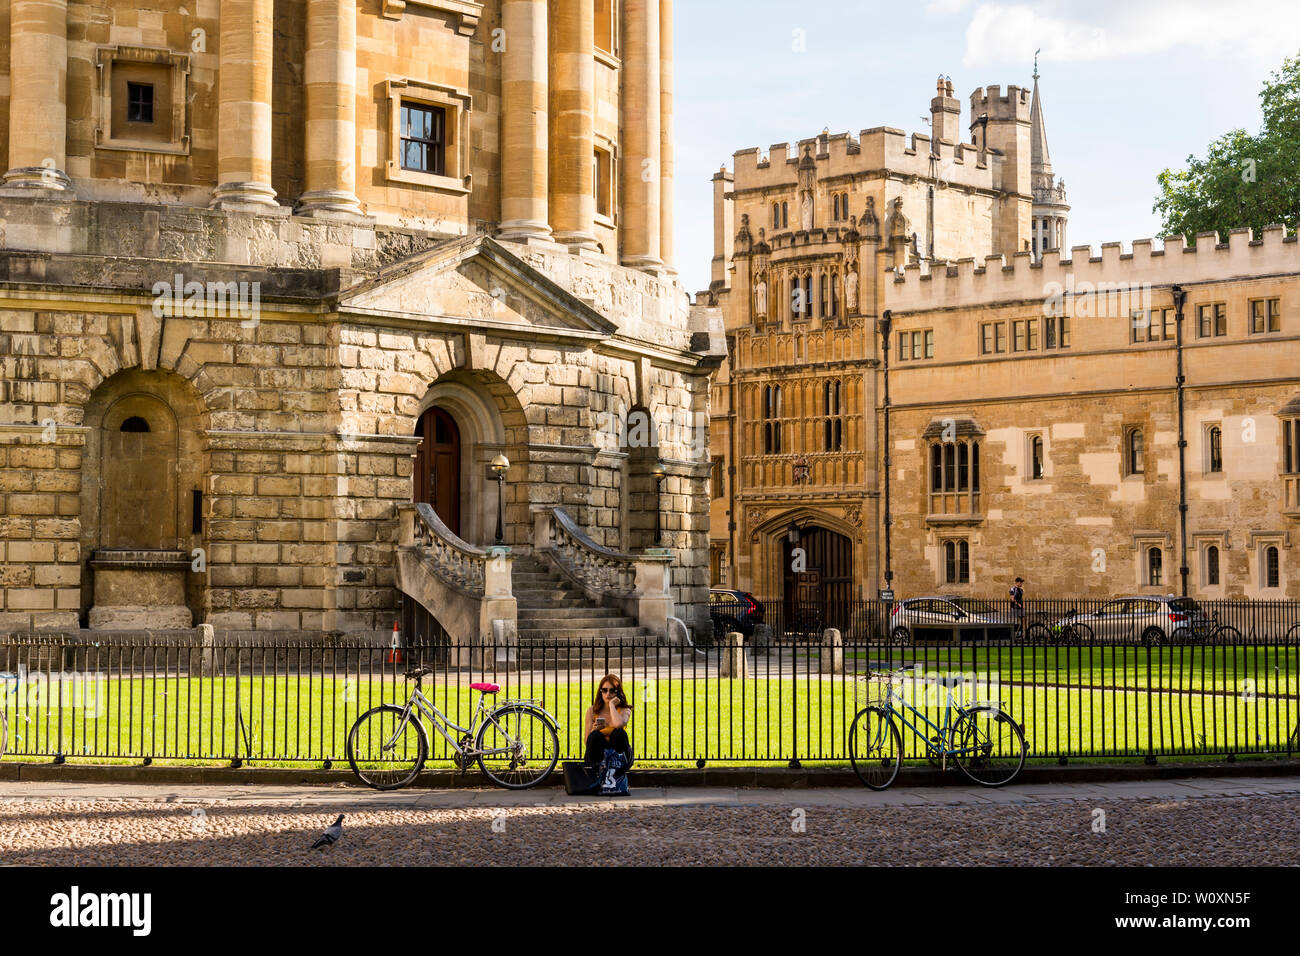 Una vista de la Radcliffe Square incluida la cámara y Brasenose College en una bonita tarde de verano en la famosa ciudad universitaria de Oxford. Foto de stock